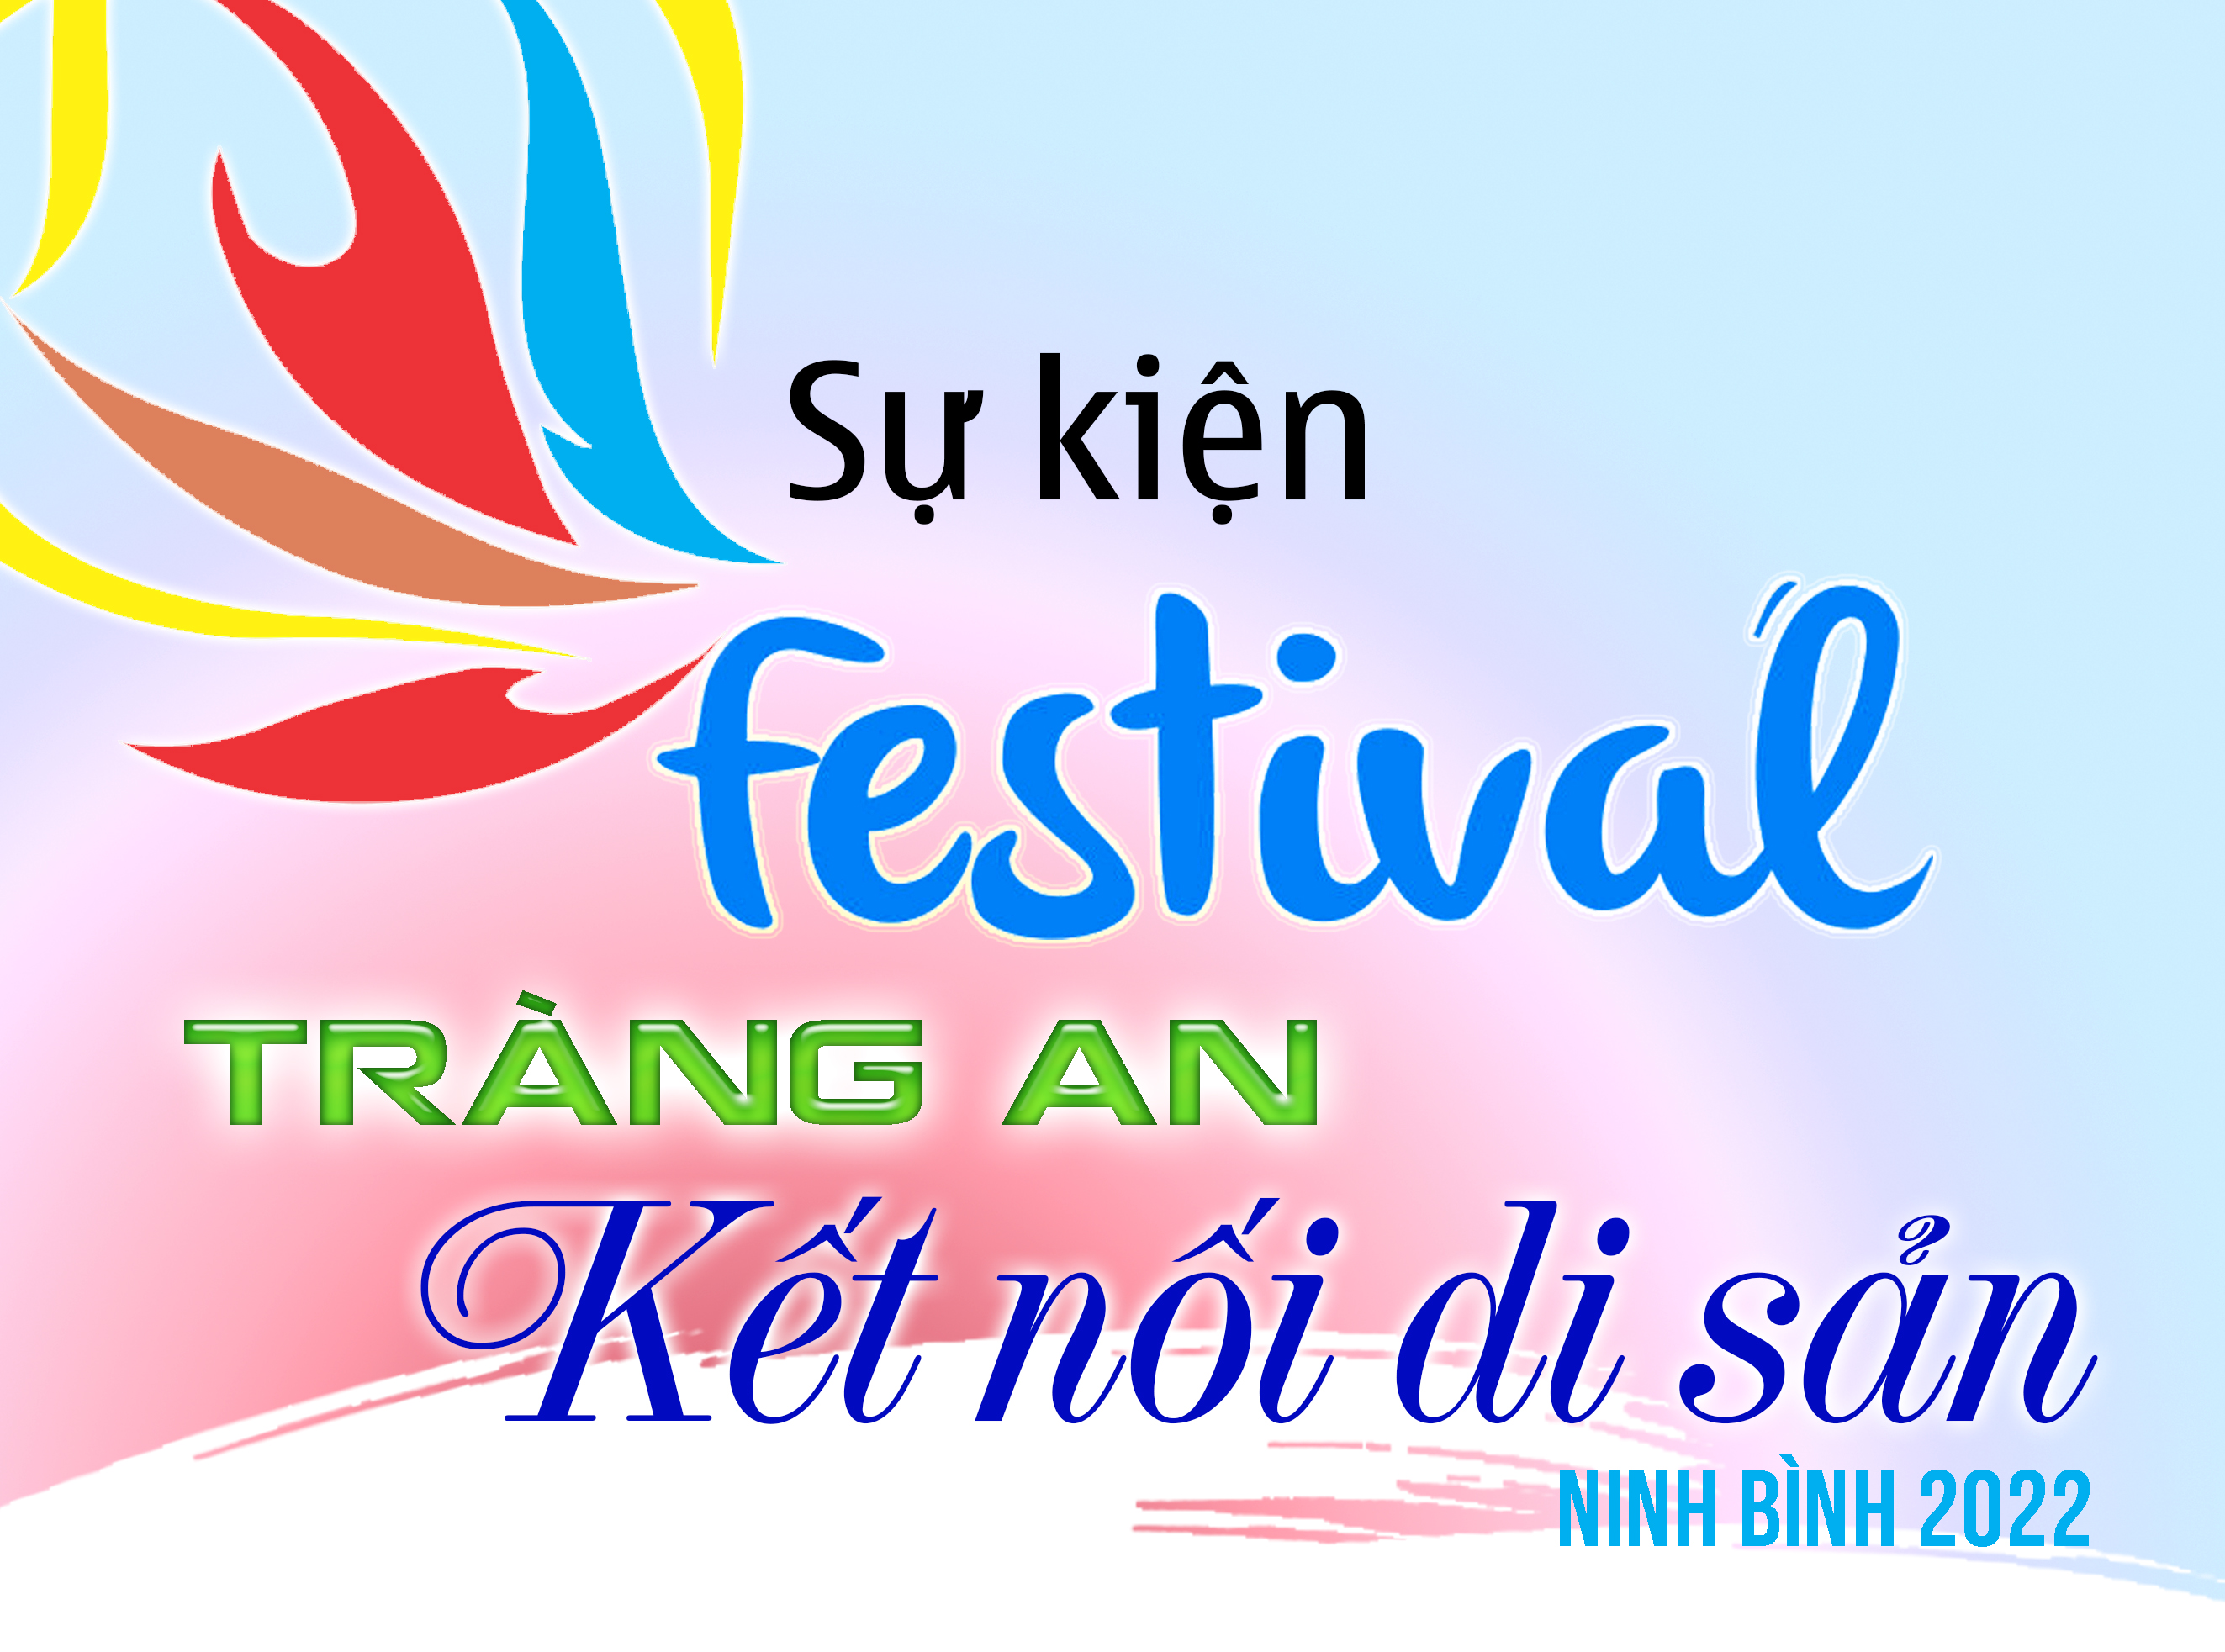 Sự kiện Festival Tràng An kết nối di sản-Ninh Bình 2022